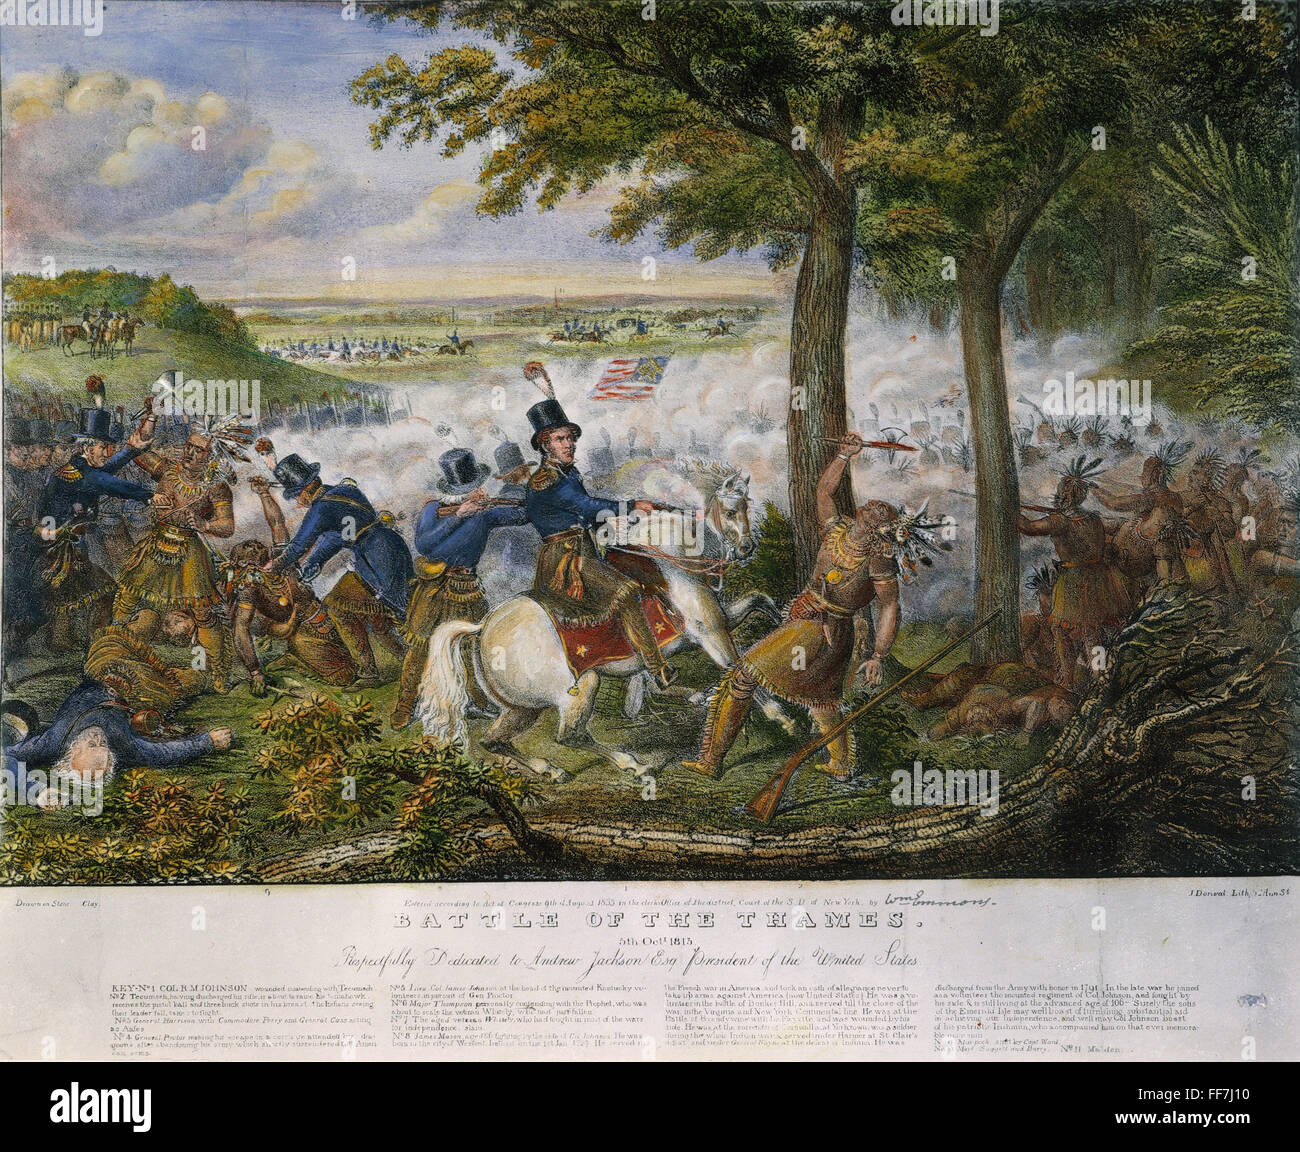 La mort de Tecumseh, 1813. /Nla mort de Tecumseh à la bataille de la Thames, 5 octobre 1813. Lithographie américaine, 1833. Banque D'Images